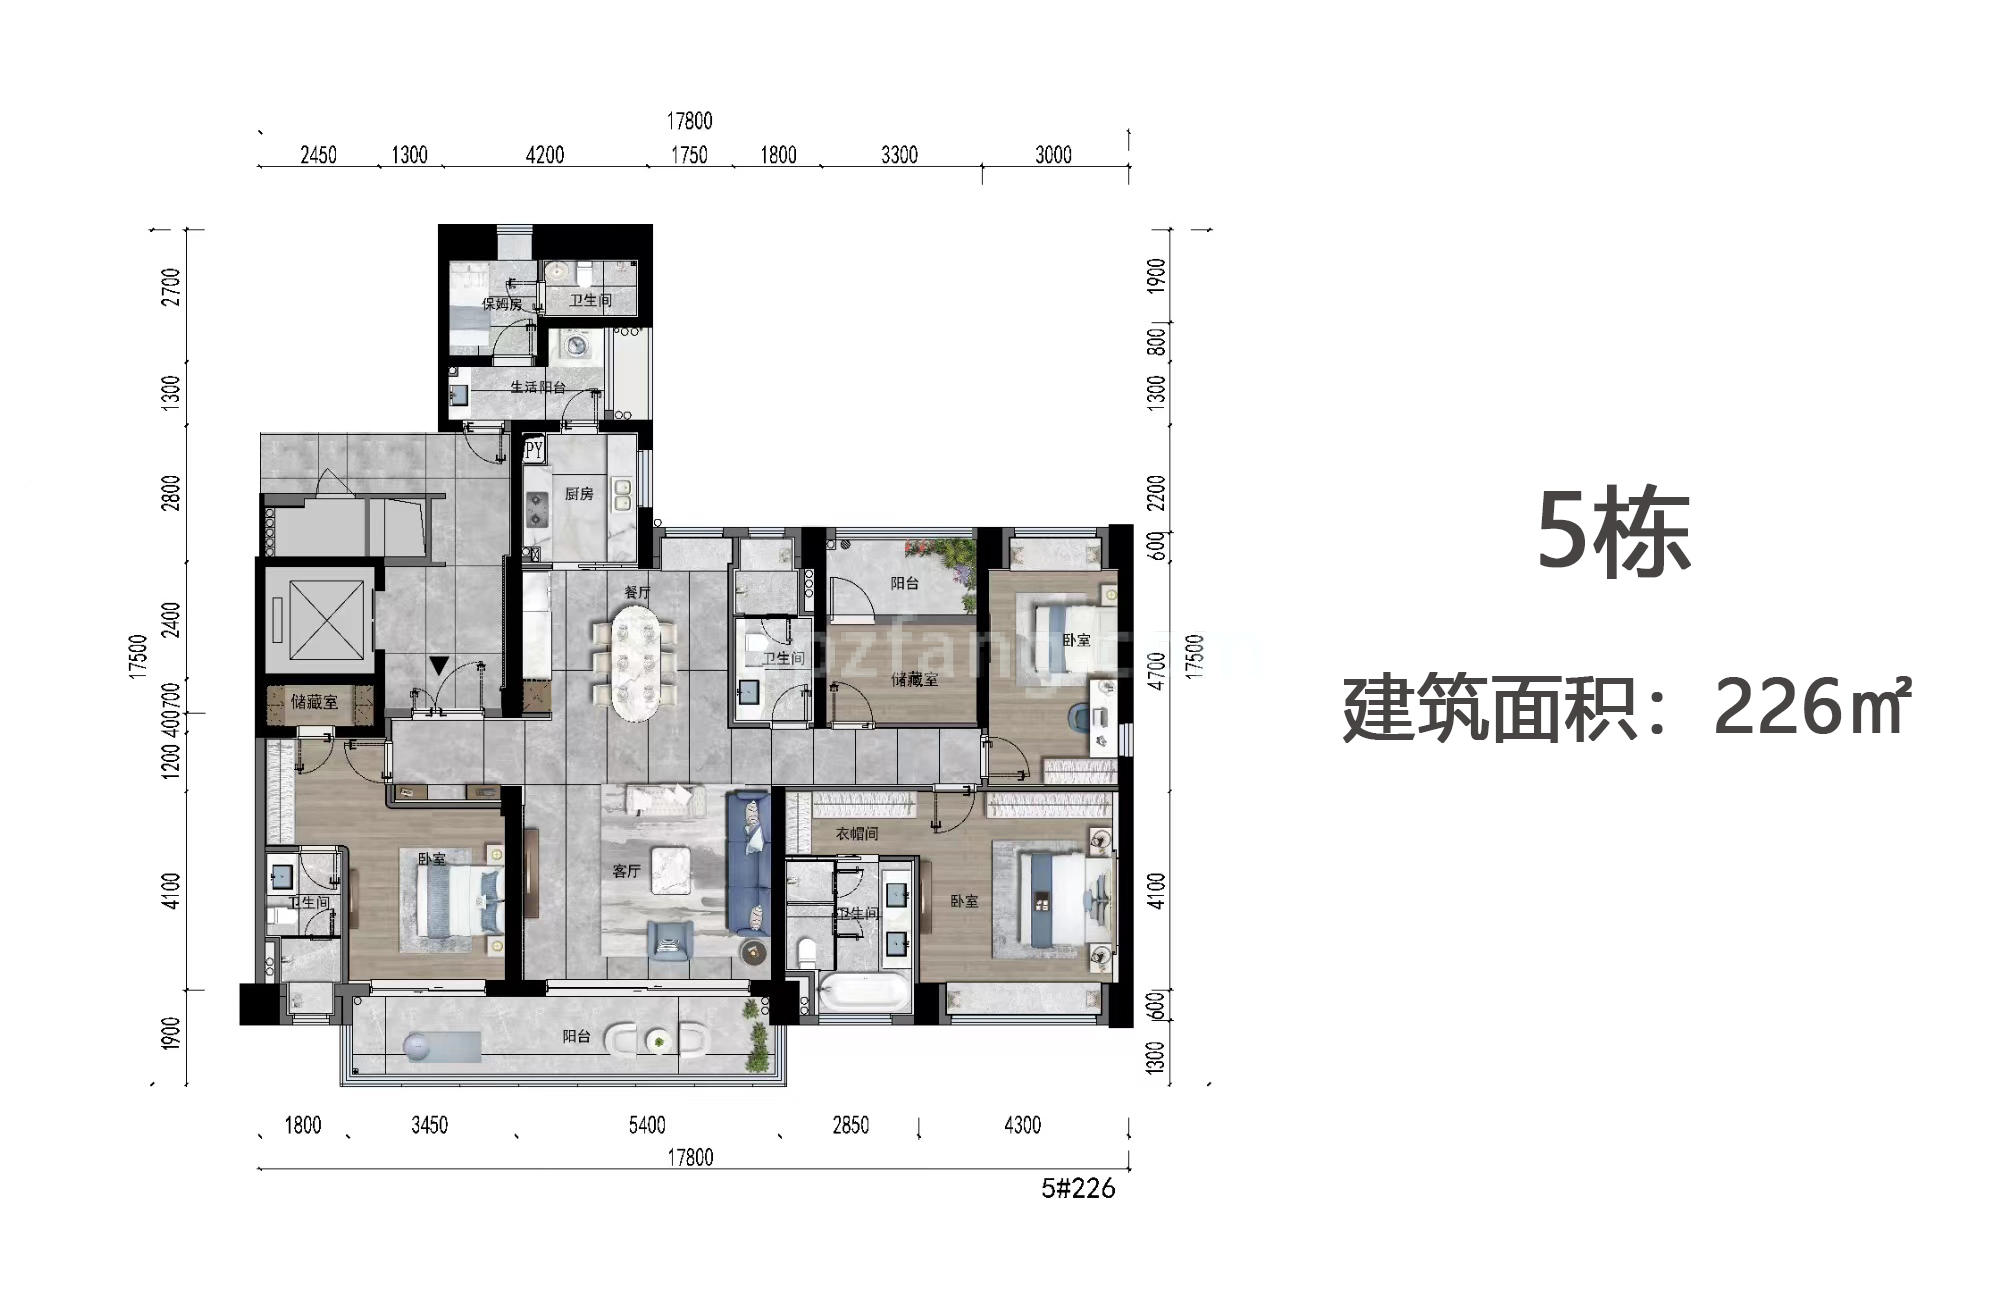 绿景玺悦湾 高层 5栋户型 5房2厅3卫+保姆房 建筑面积226㎡